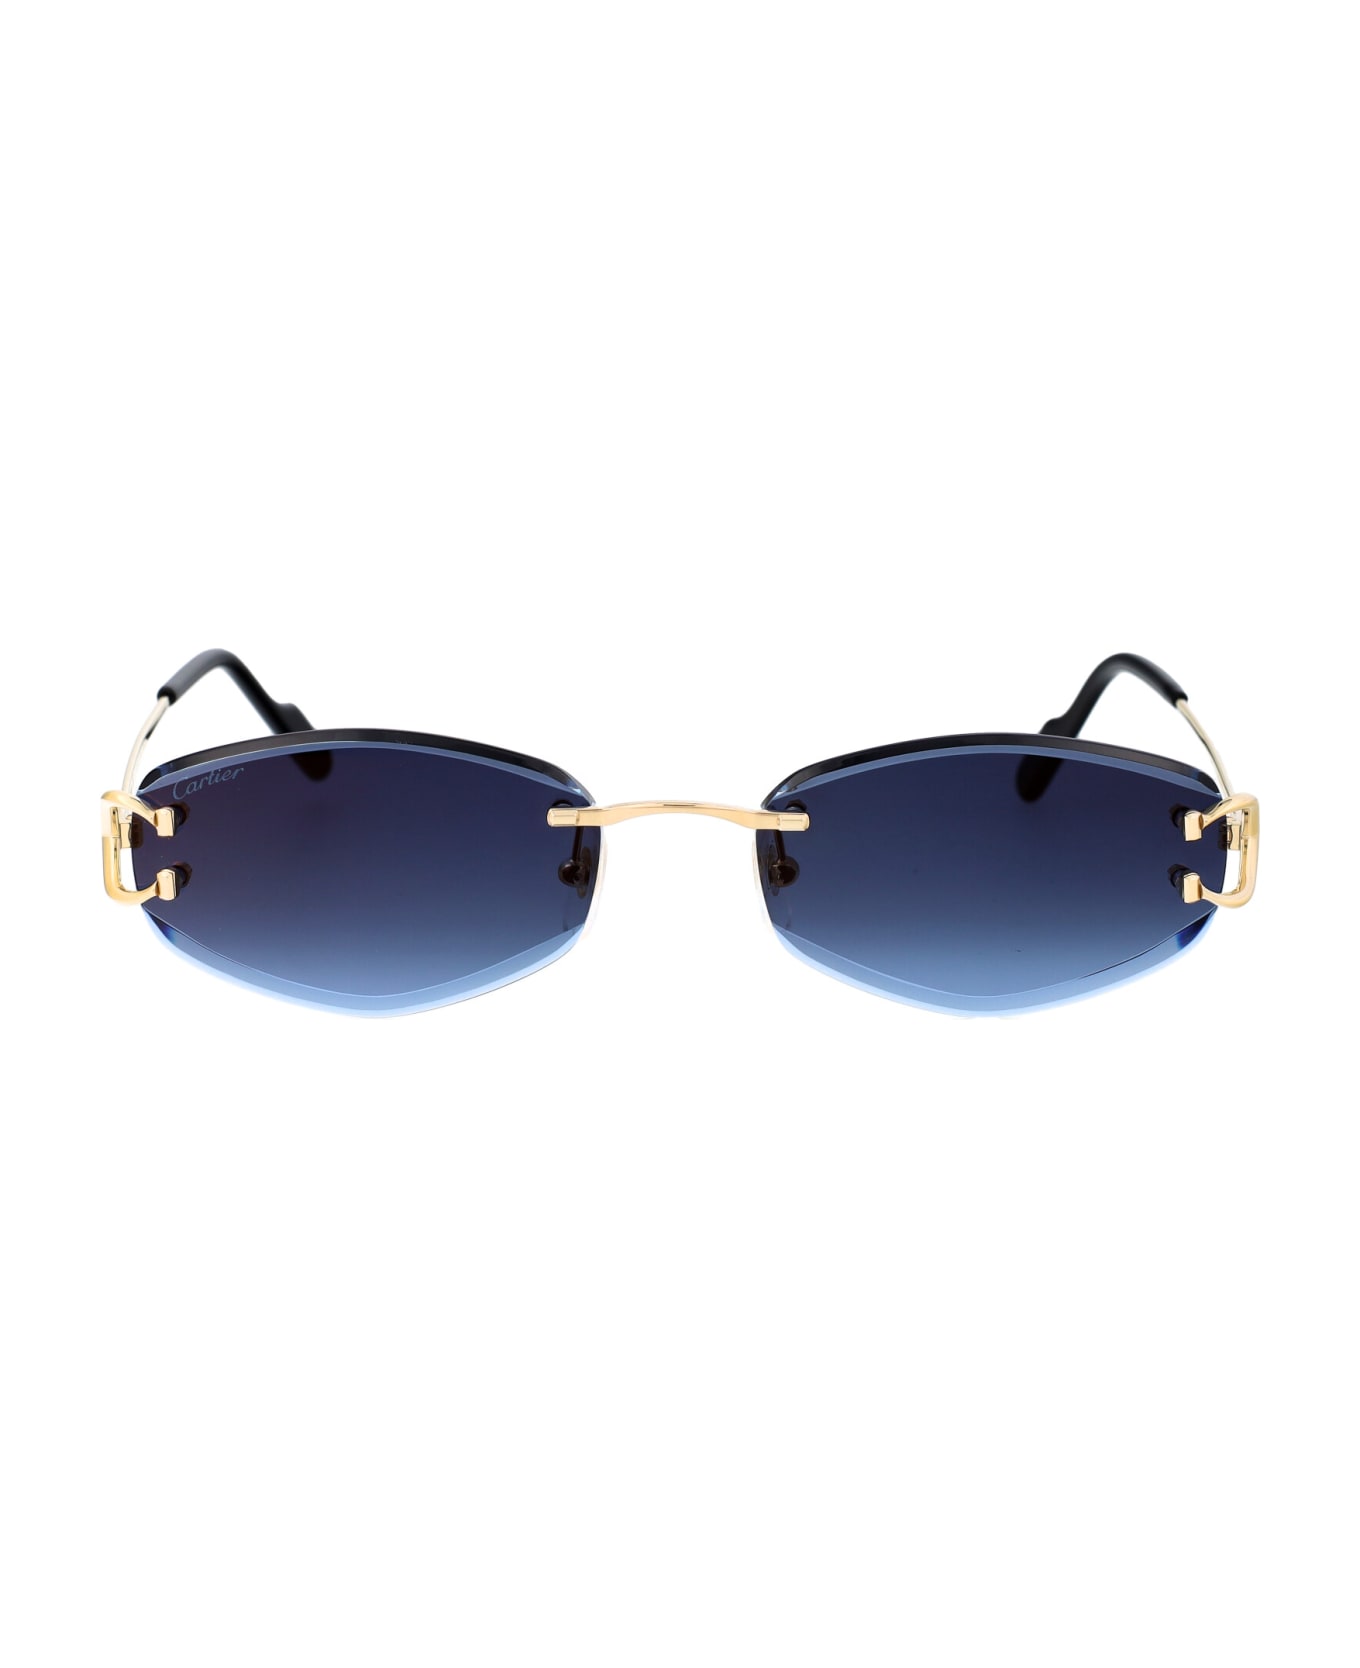 Cartier Eyewear Ct0467s Sunglasses - 002 GOLD GOLD BLUE